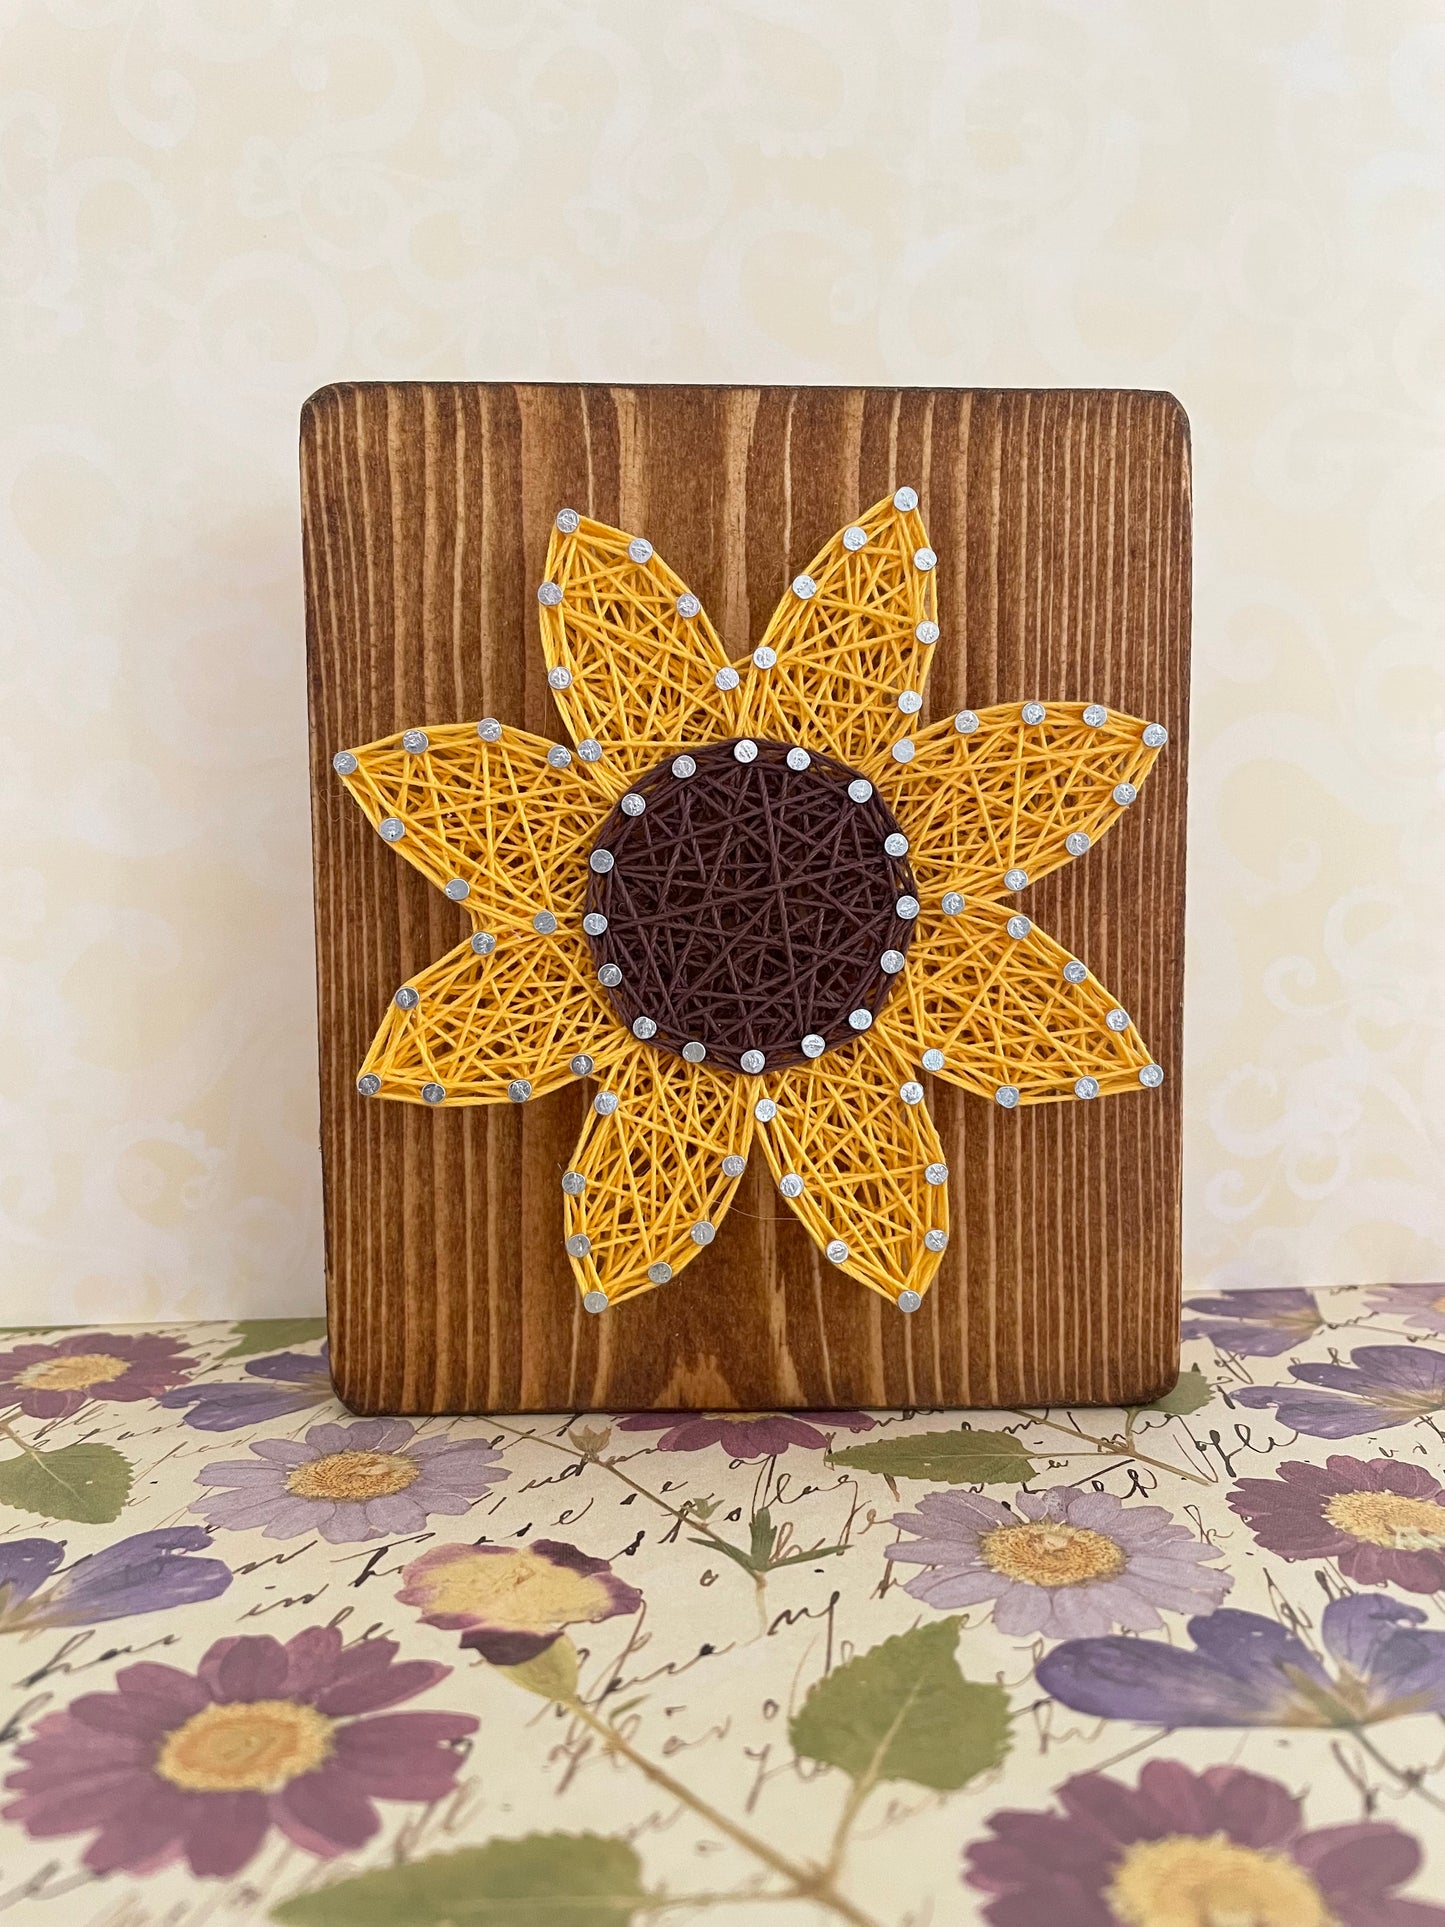 DIY Sunflower String Art Kit